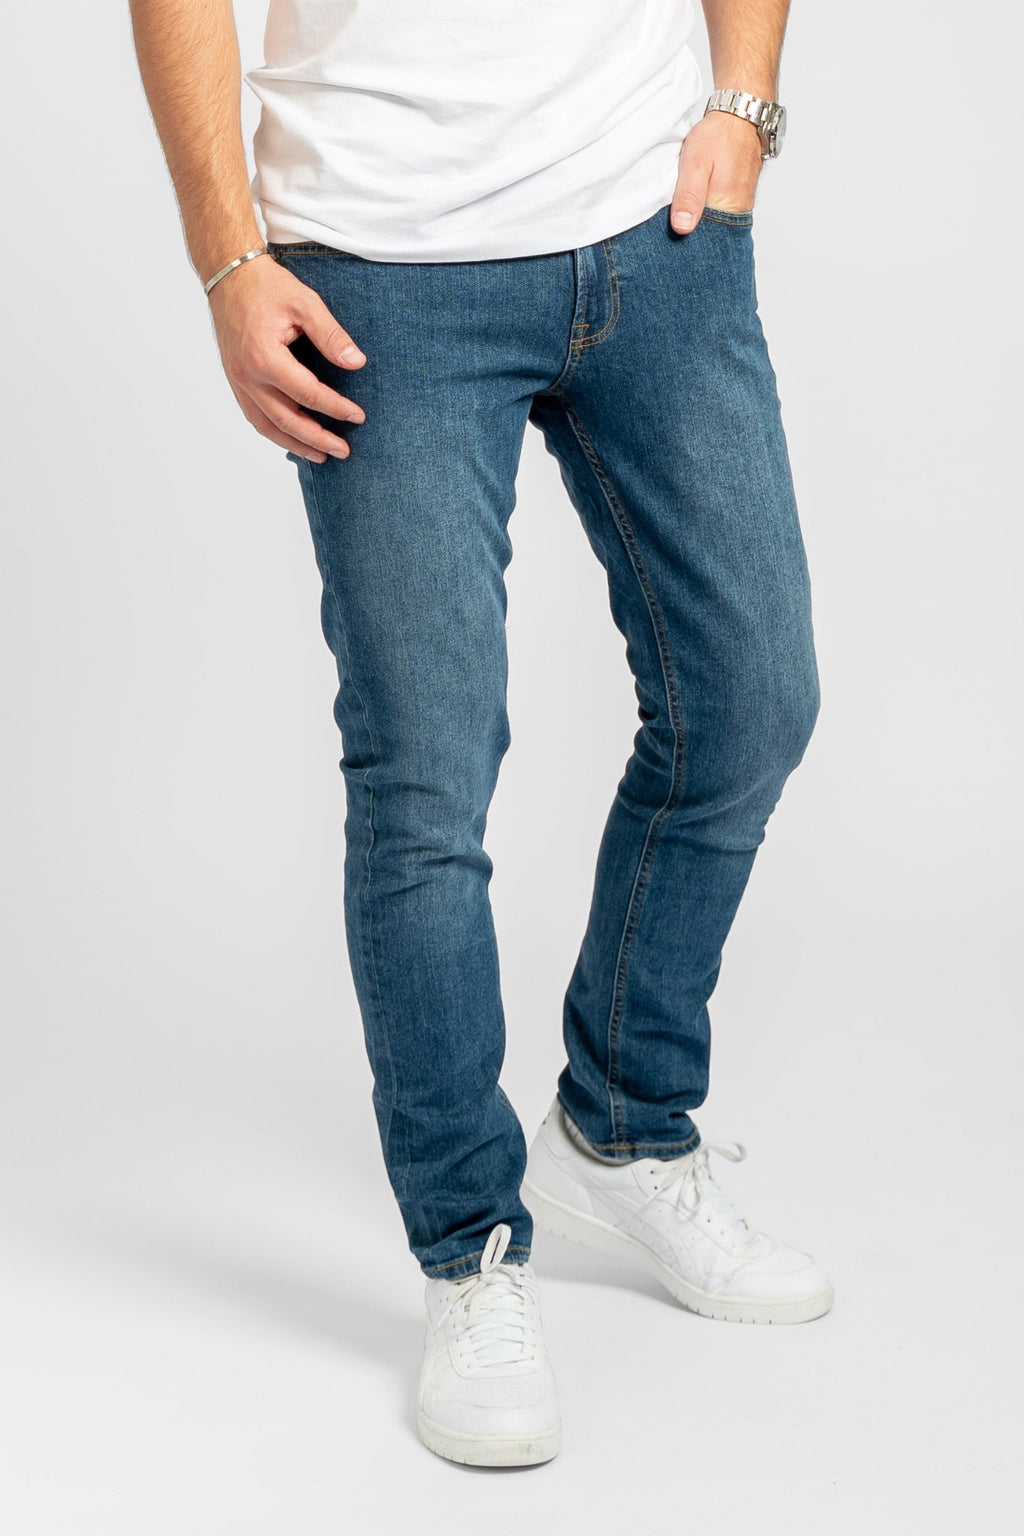 Les jeans de performance originaux - Forme de package (4 pc.)